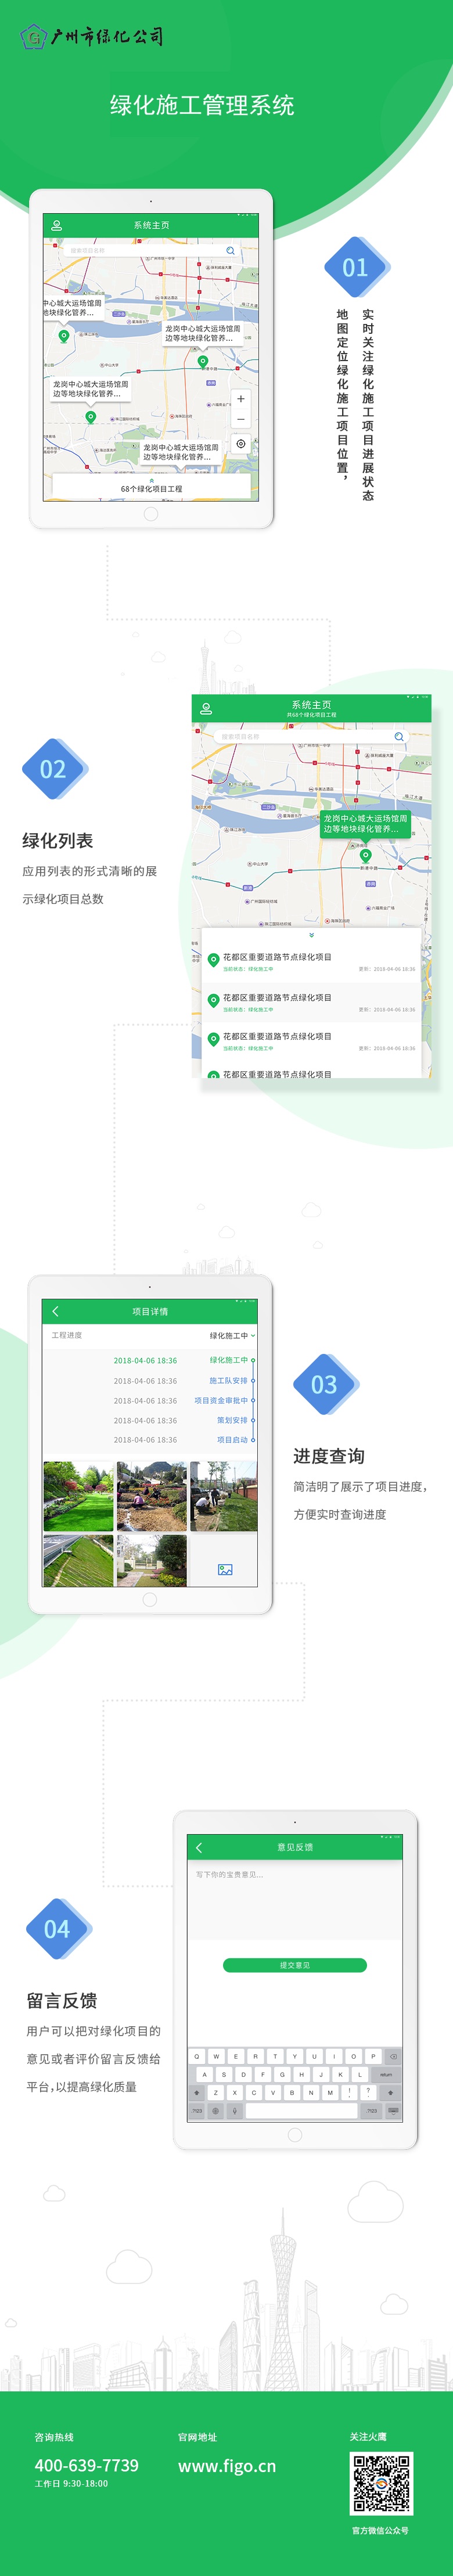 广州绿化公司-绿化施工进度管理系统